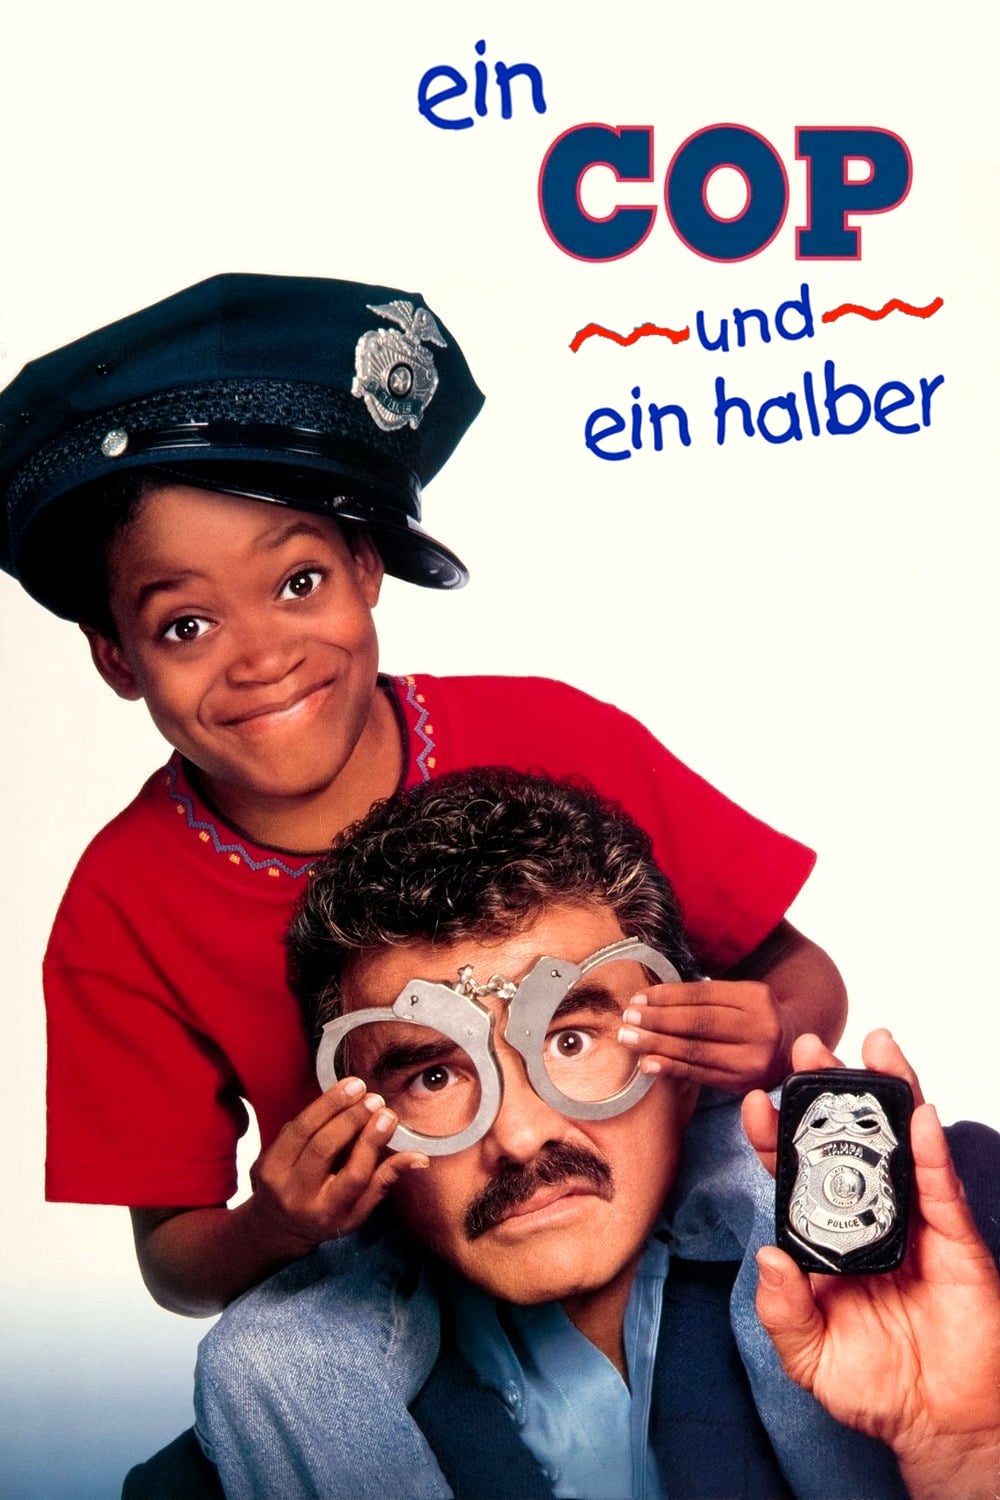 Plakat von "Ein Cop und ein halber"